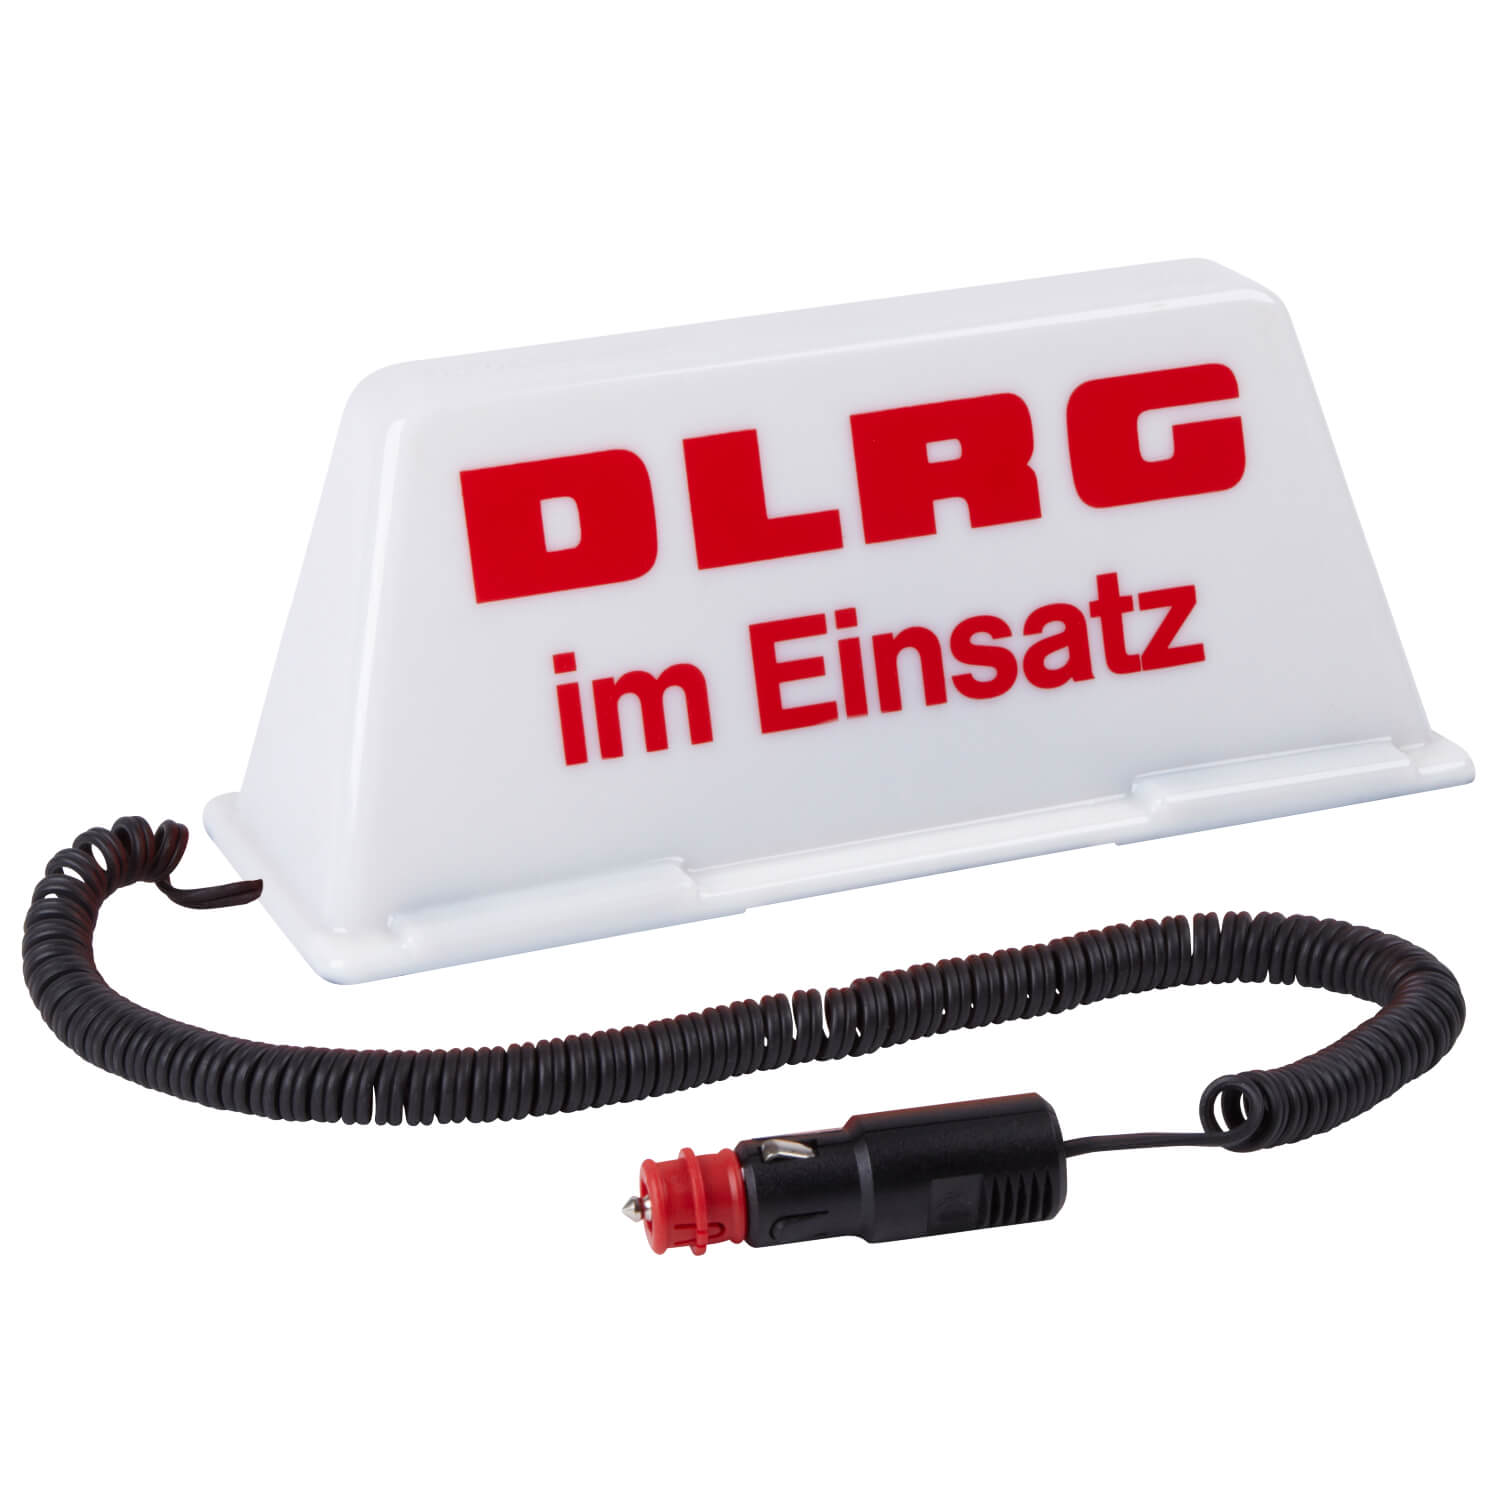 Dachschild DLRG im Einsatz weiss / rot (beleuchtet)